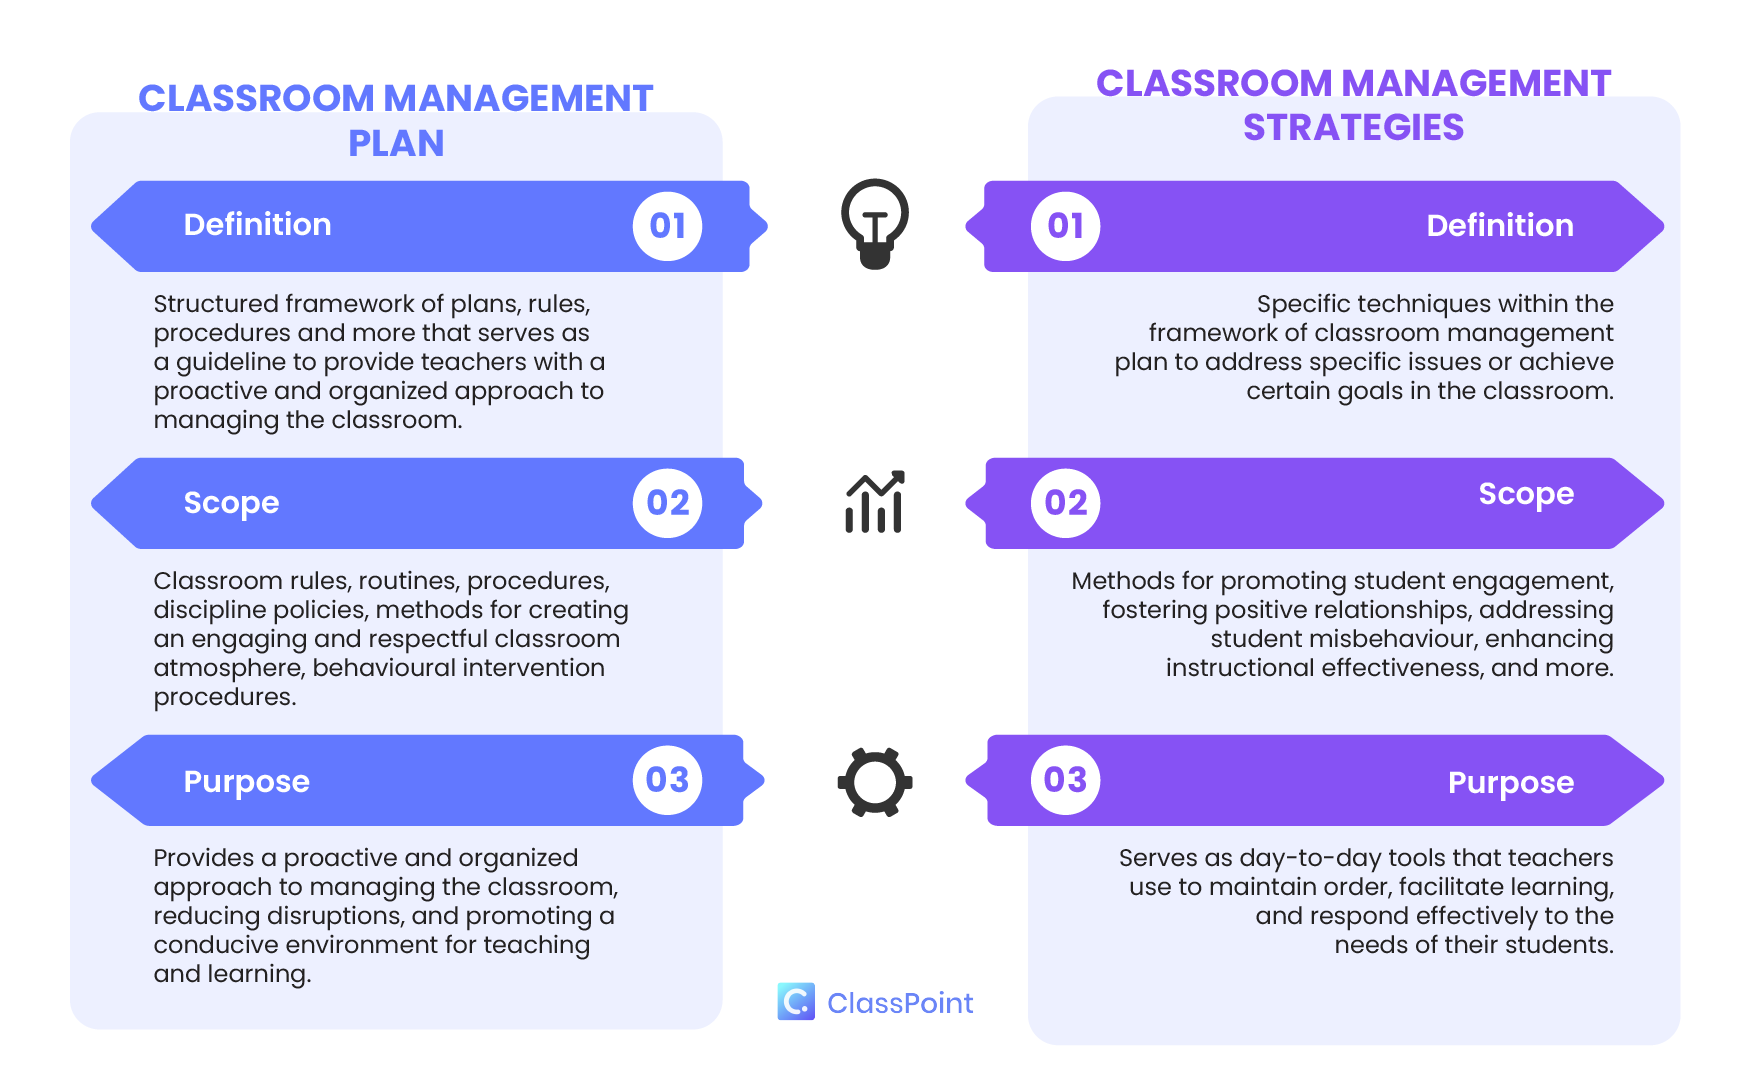 Perbedaan antara Rencana Manajemen Kelas dan Strategi Manajemen Kelas